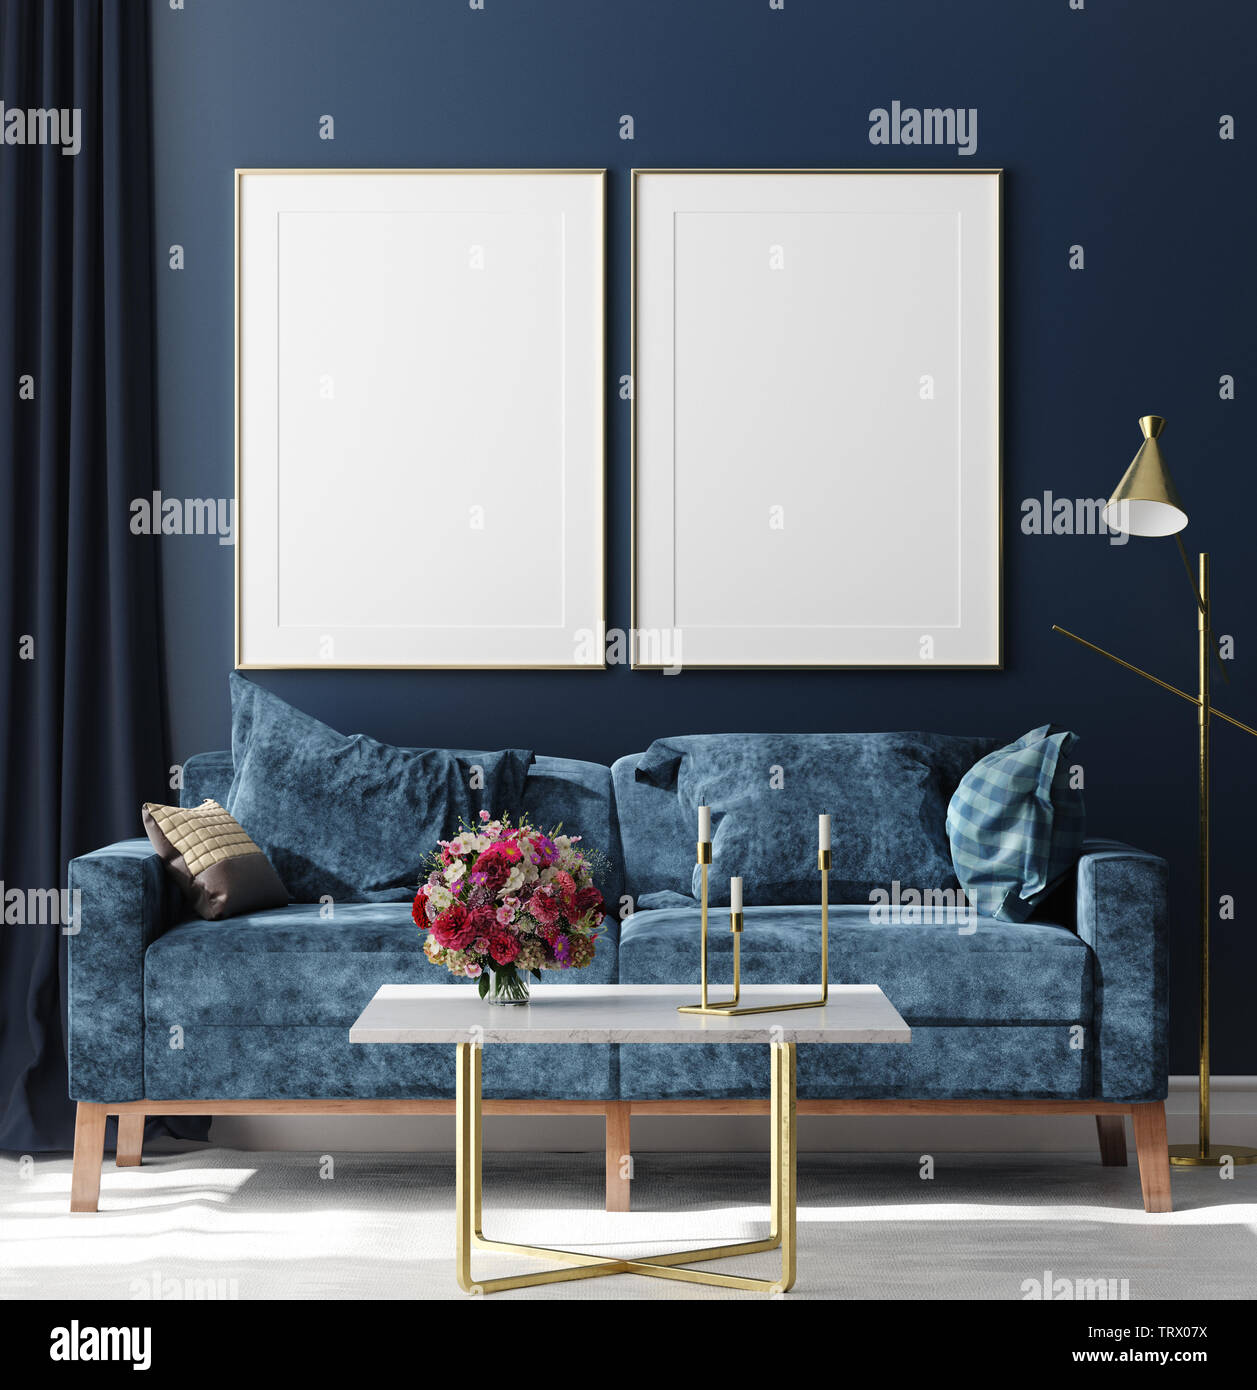 La maquette de l'affiche en arrière-plan, l'intérieur hipster chambre bleu foncé avec bouquet sur table, de rendu 3D Banque D'Images